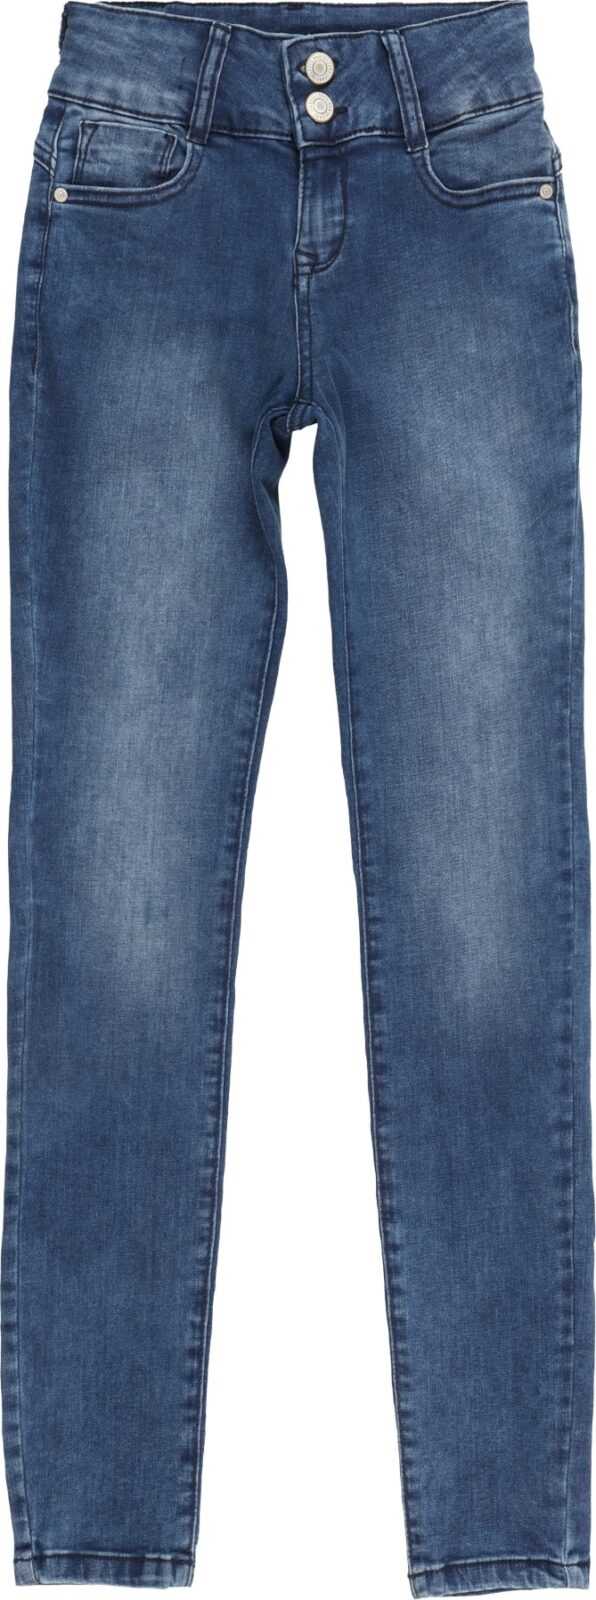 Cars Jeans Džíny modrá džínovina